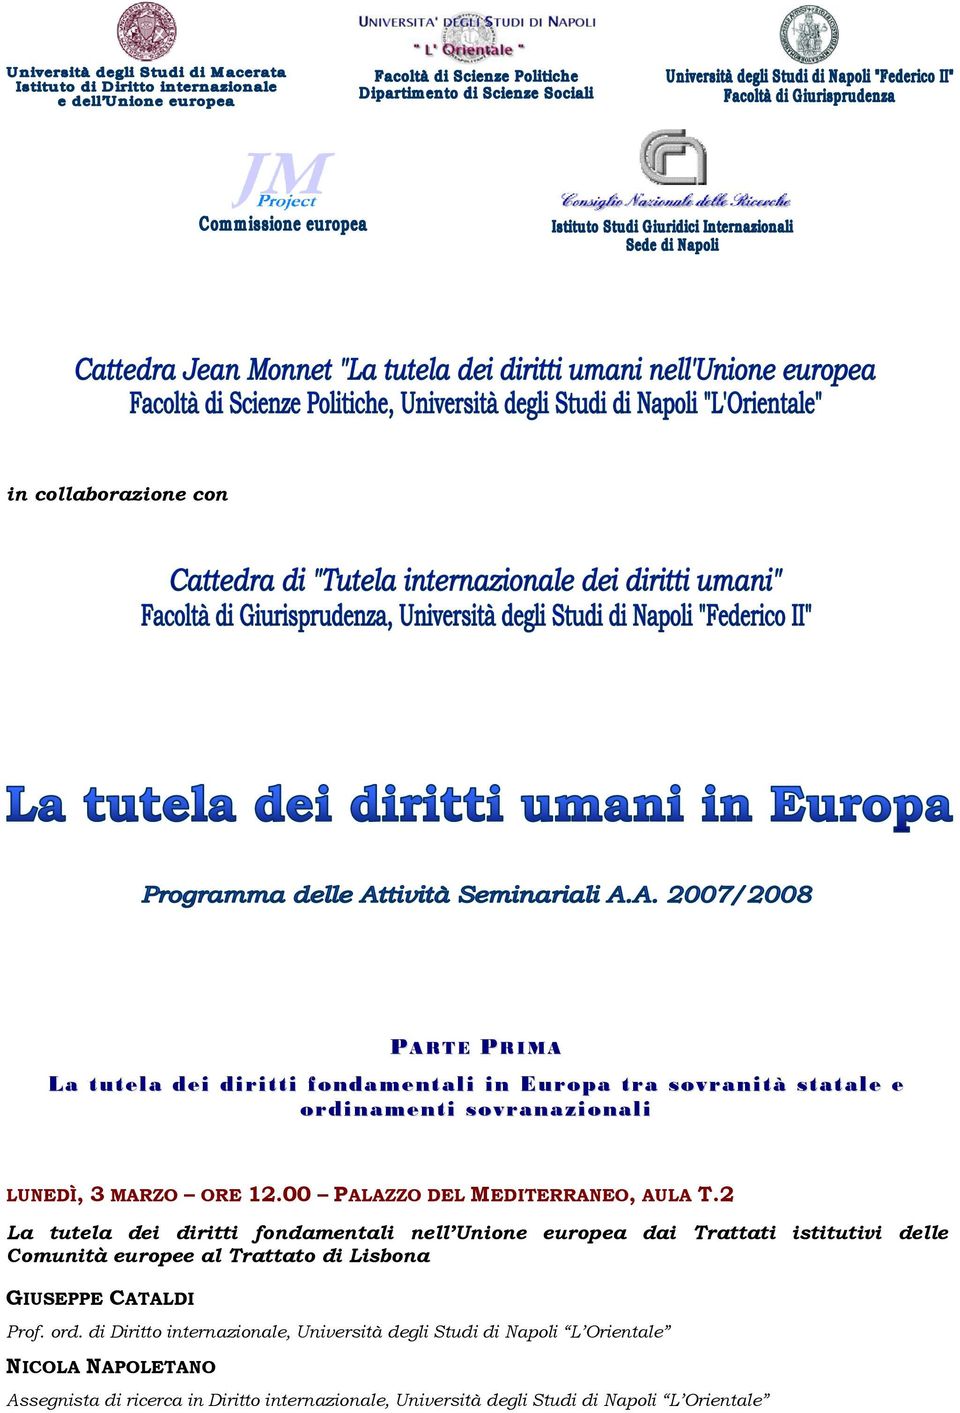 2 La tutela dei diritti fondamentali nell Unione europea dai Trattati istitutivi delle Comunità europee al Trattato di Lisbona